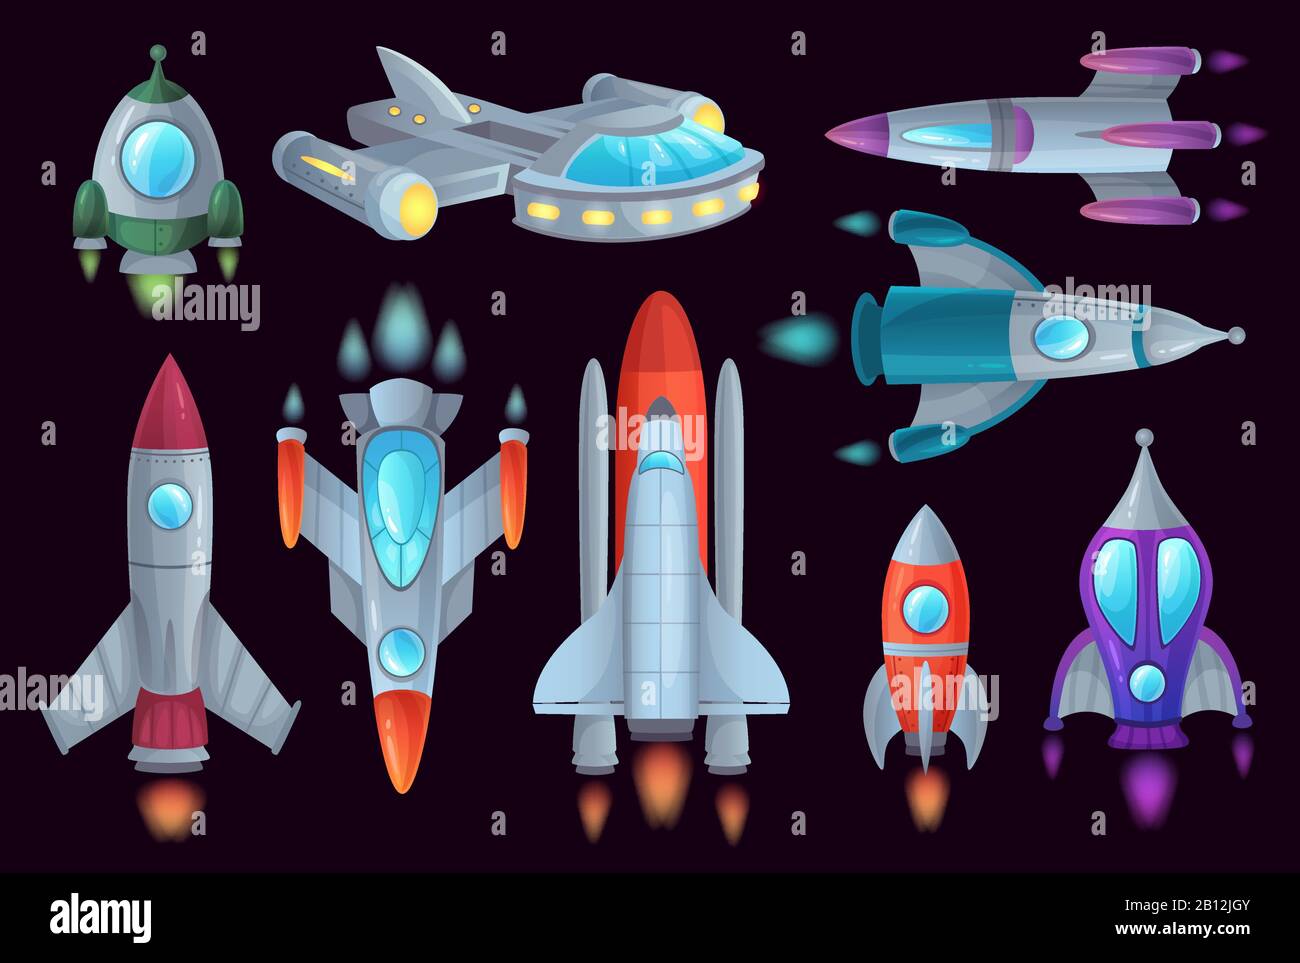 Razzi cartoni animati. Insieme di illustrazioni vettoriali isolate per navi spaziali, razzo aerospaziale e navi spaziali Illustrazione Vettoriale